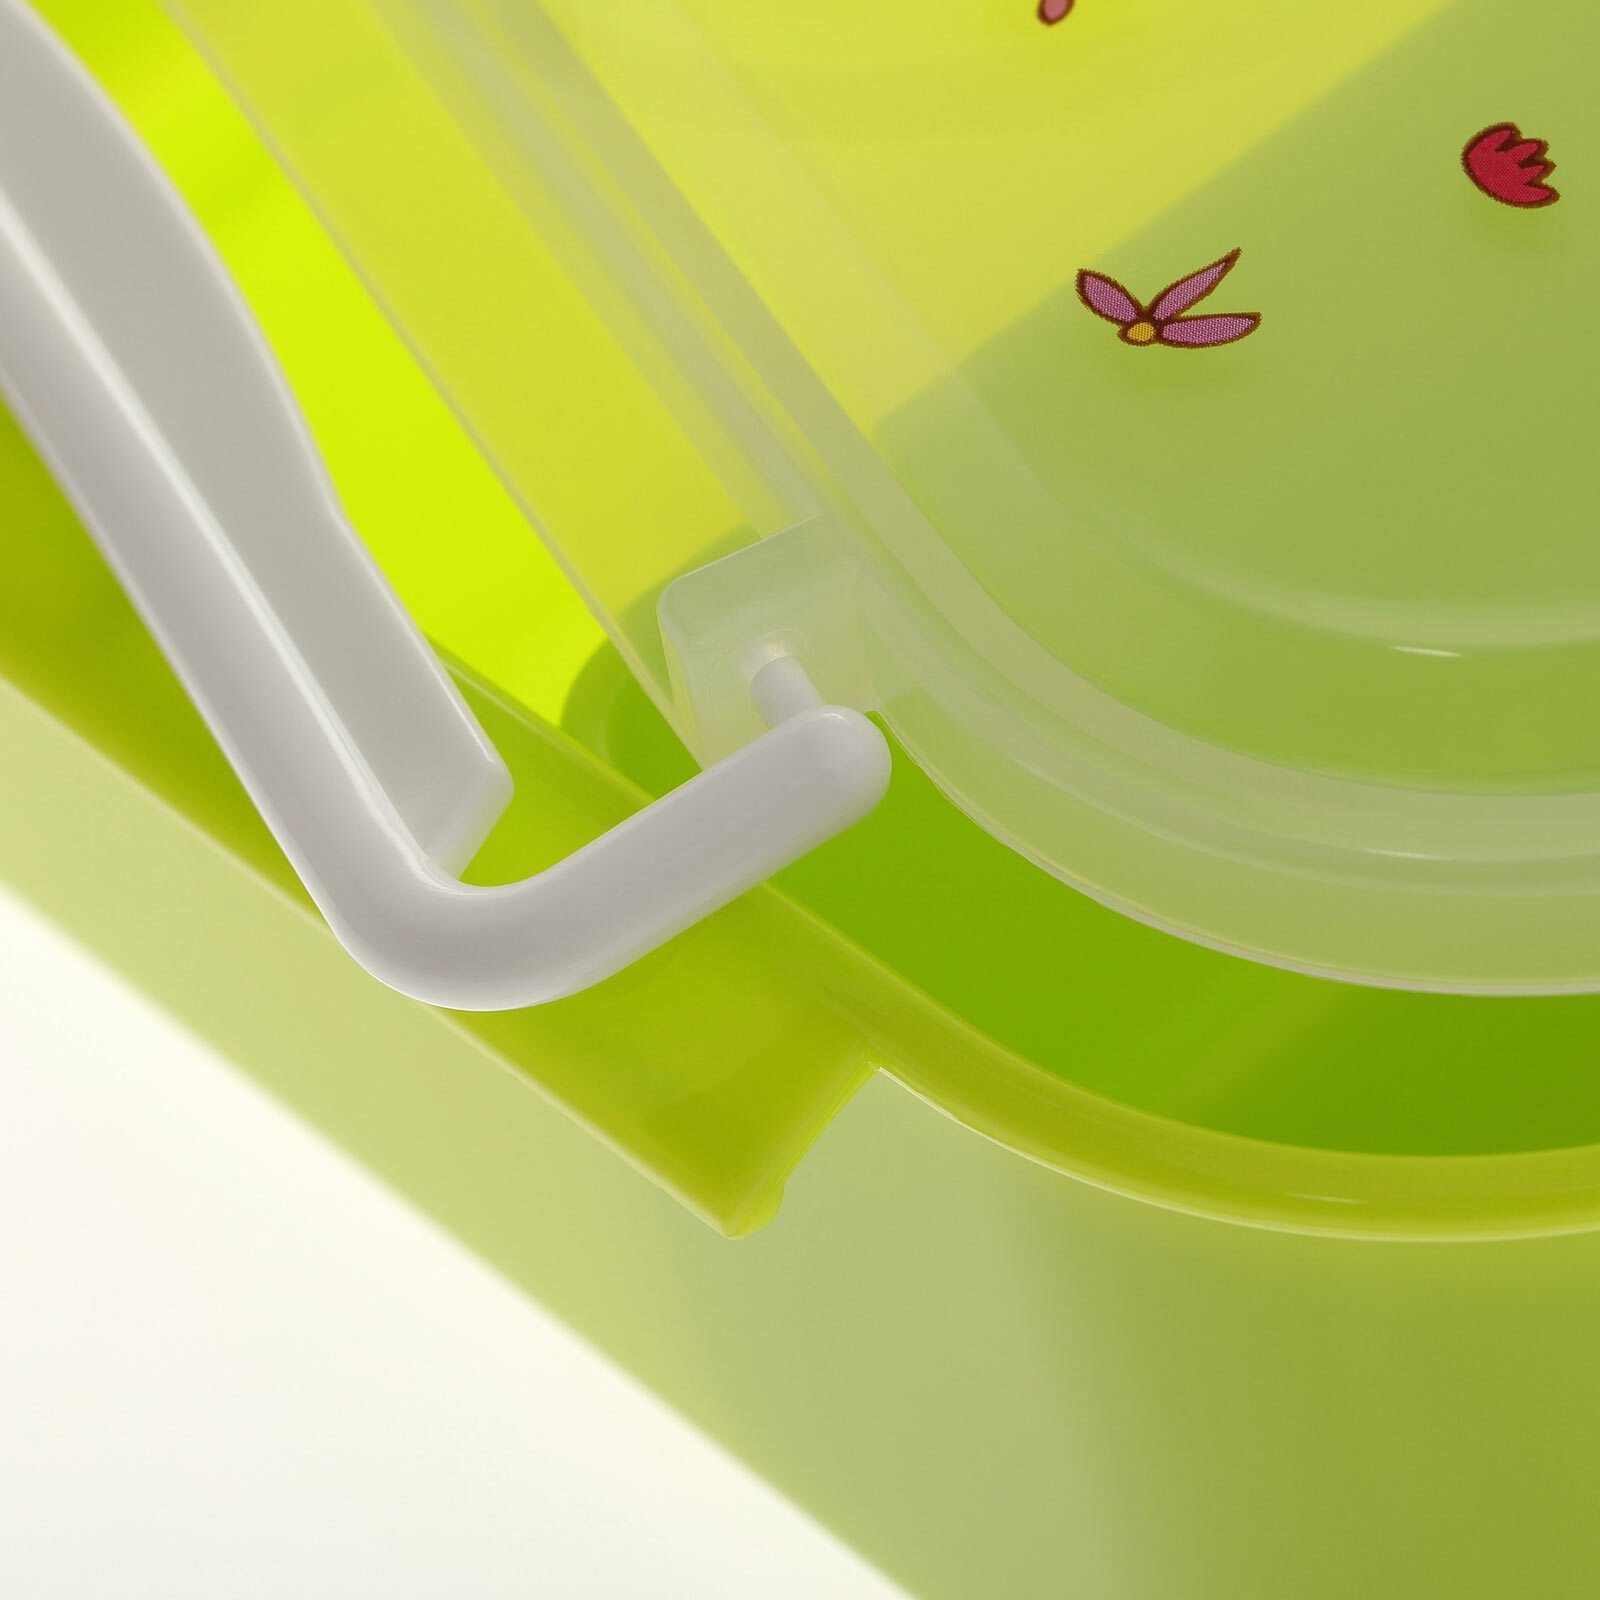 Sigikid Lunchbox Lunchbox 17 x spülen grün (1-tlg), mit Motiv-Deckel Hand 11 7 cm, Spülmaschinengeeignet, Polypropylen, x Florentine, der